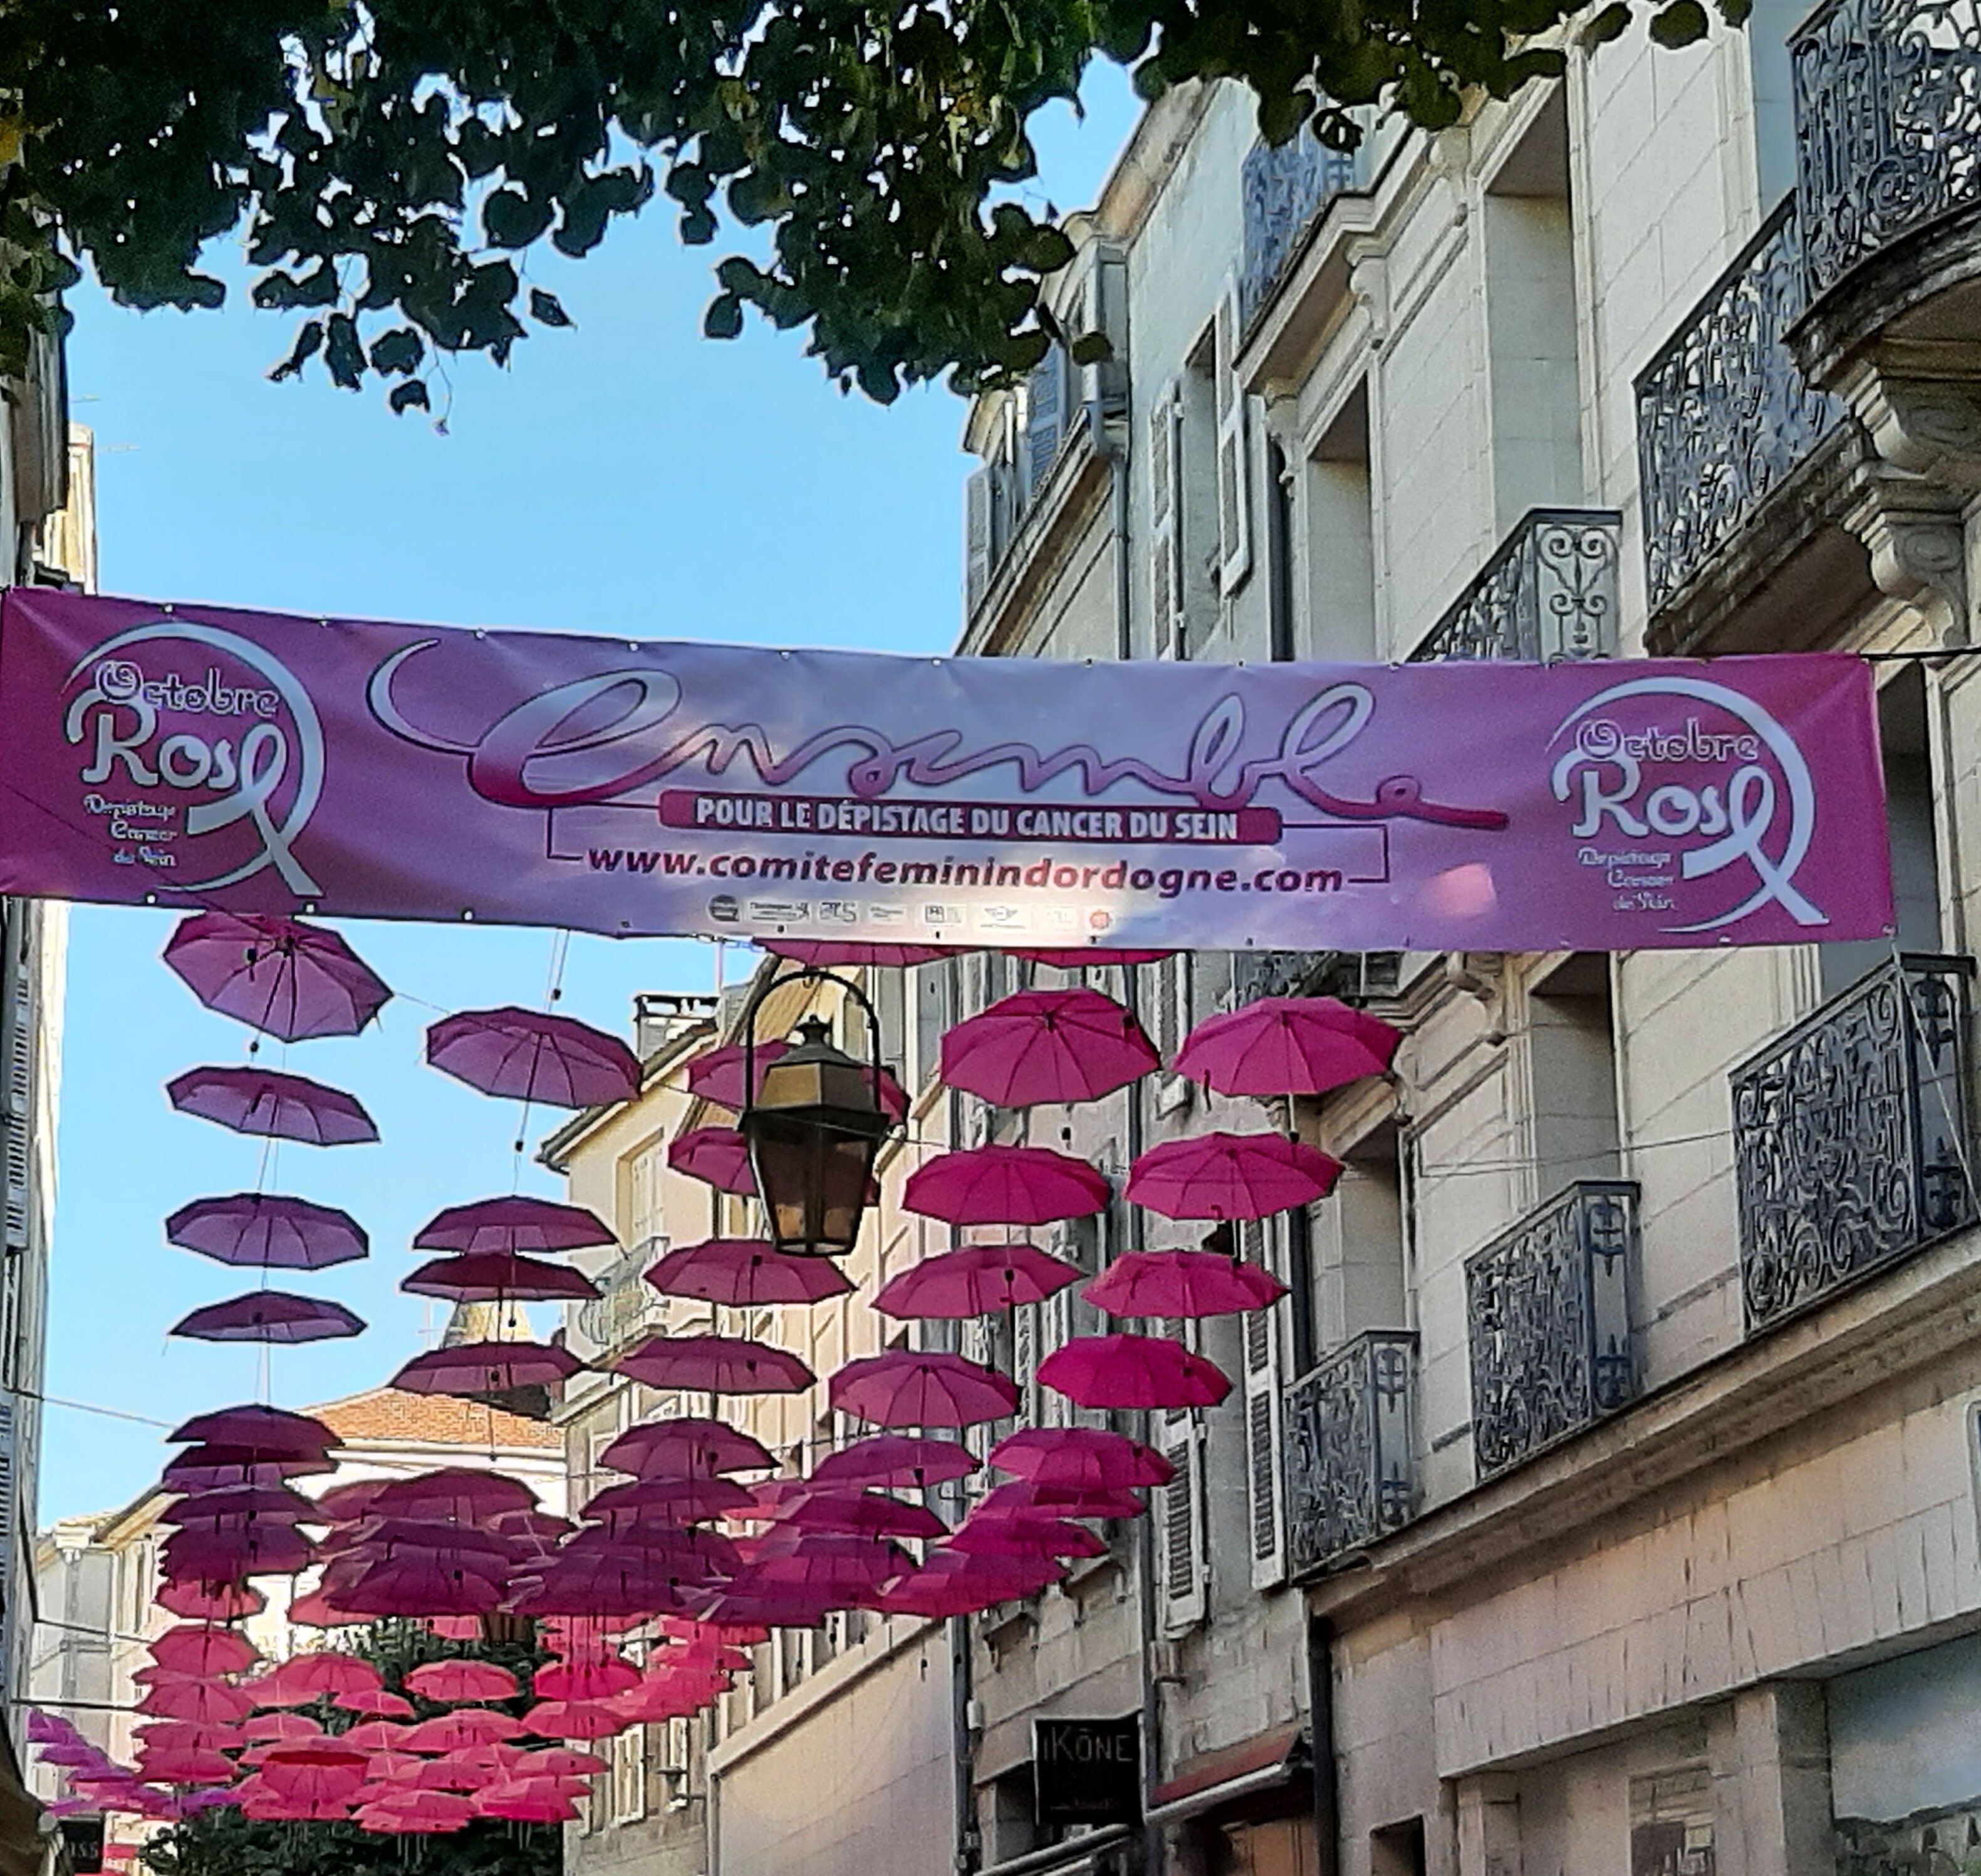 Comité Féminin Dordogne